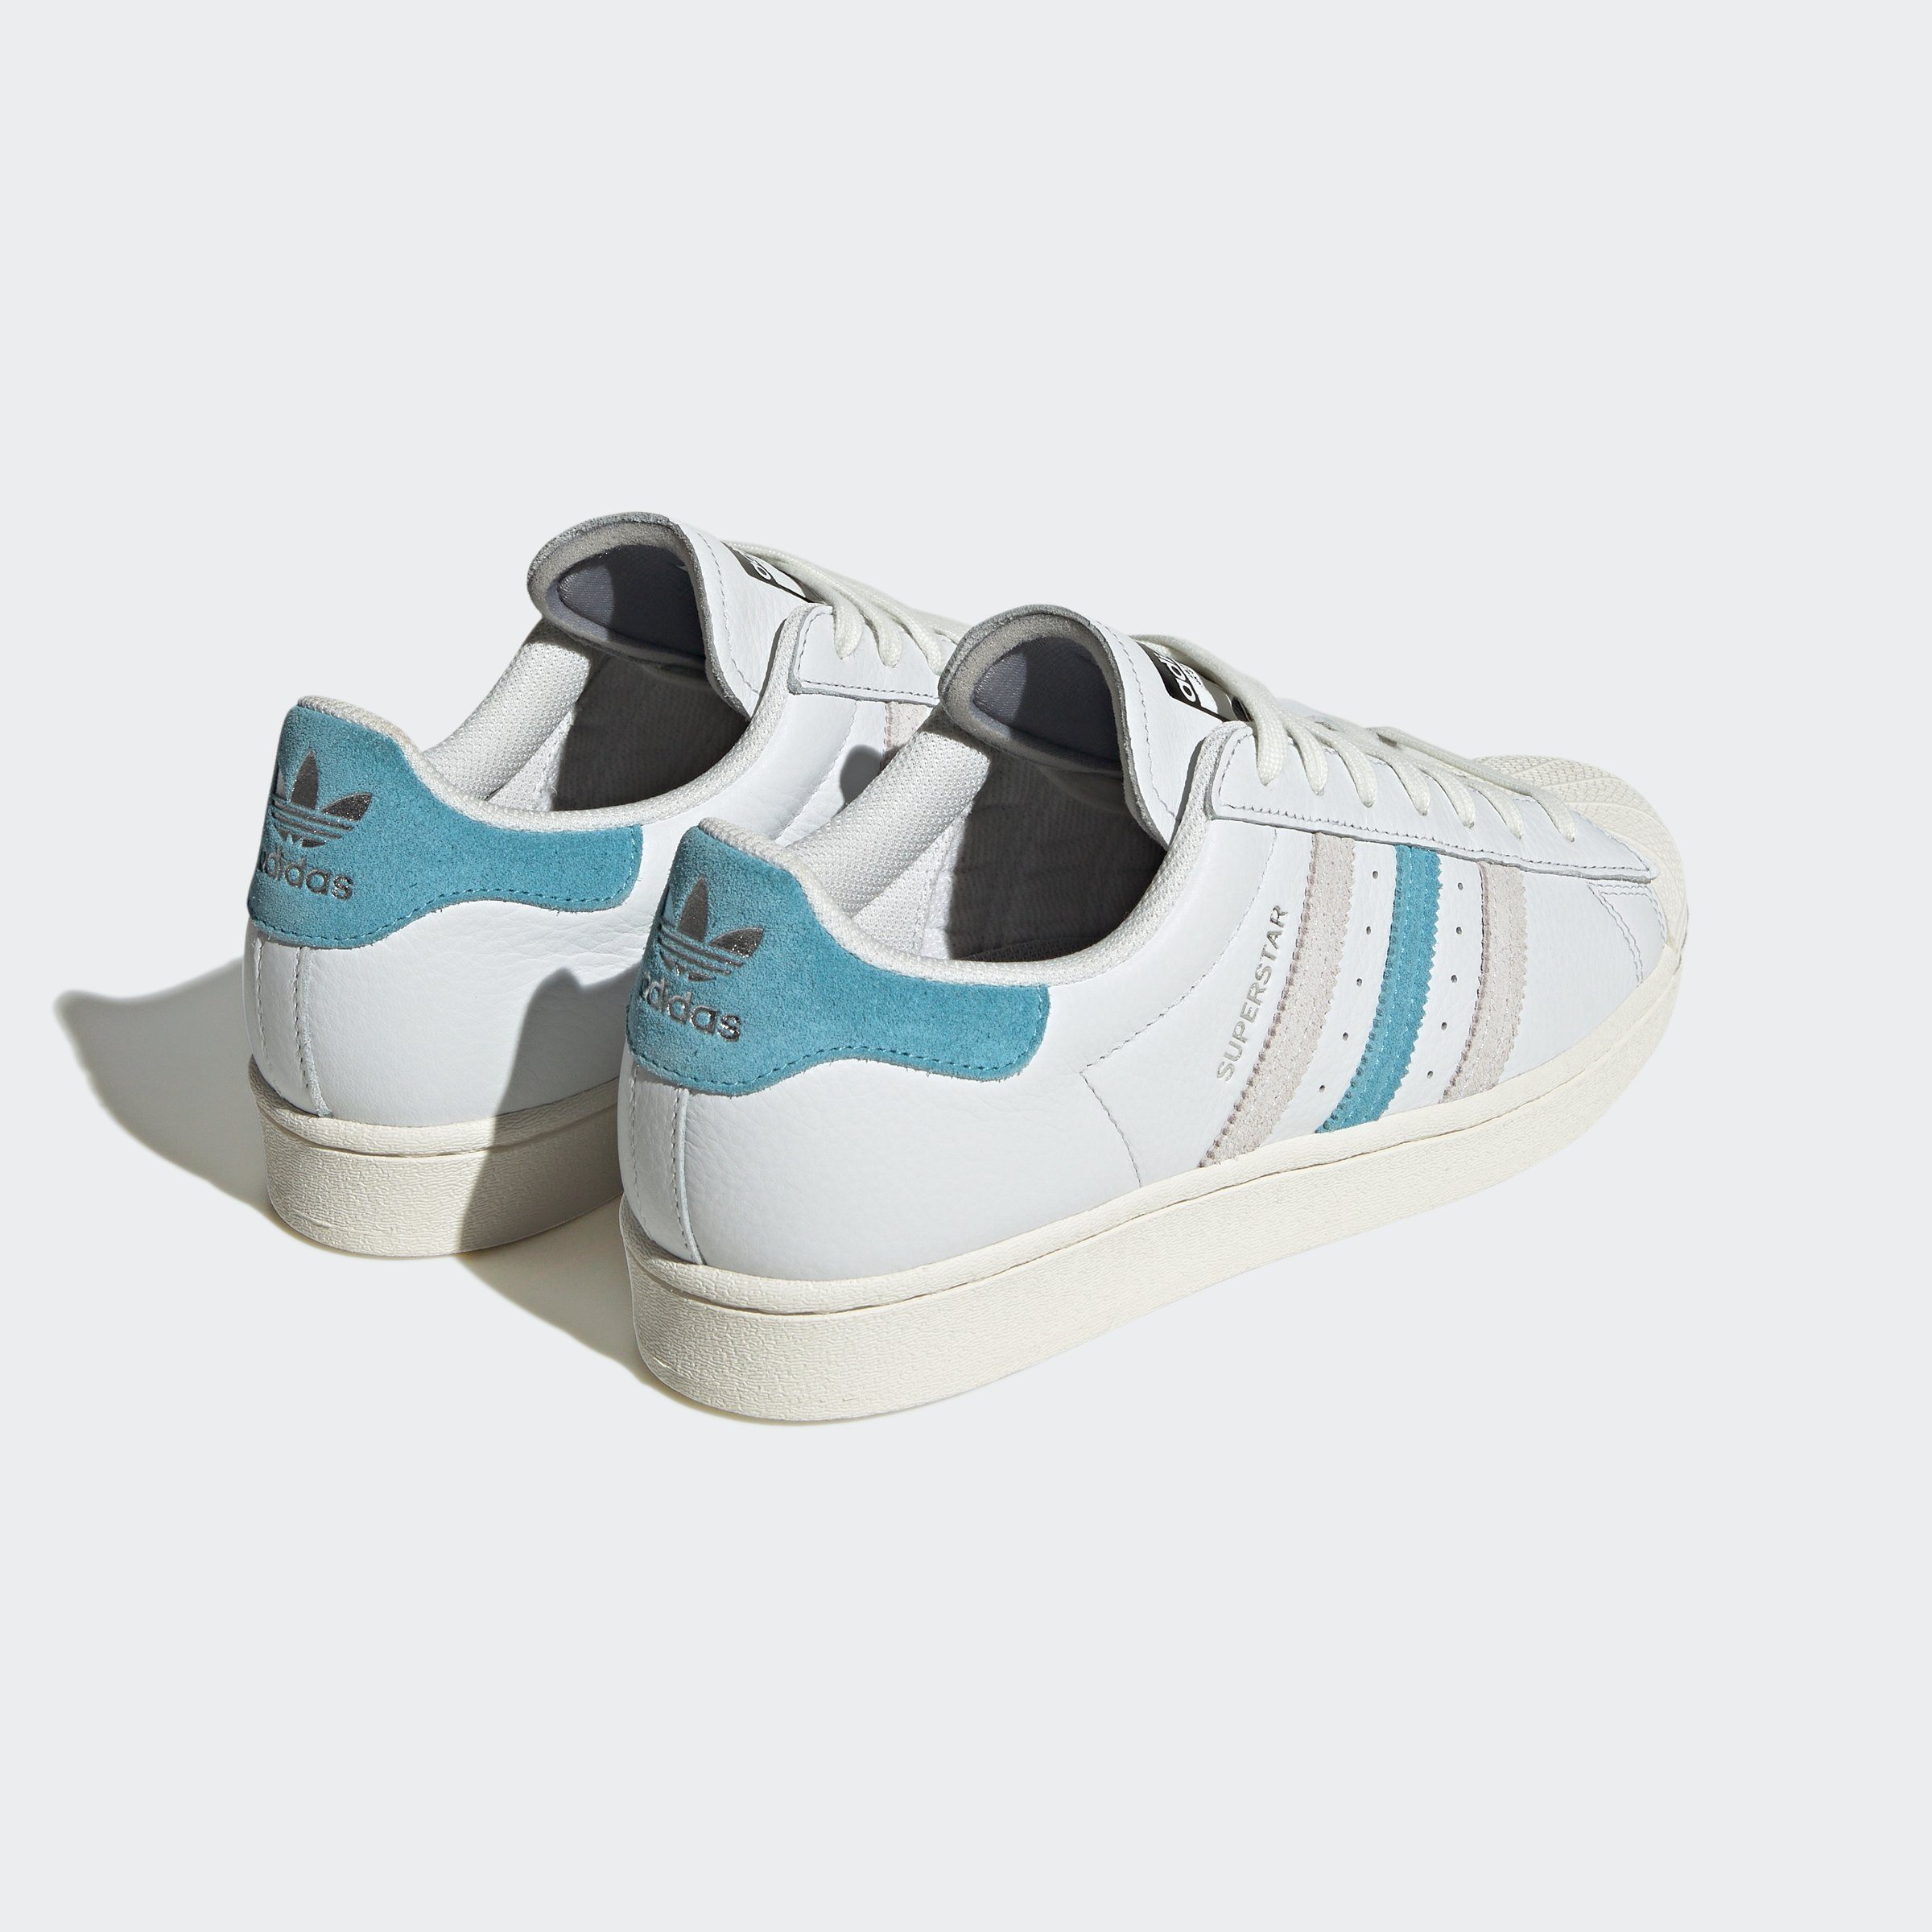 adidas Originals / Sneaker Cream White Grey SUPERSTAR One Blue / Preloved